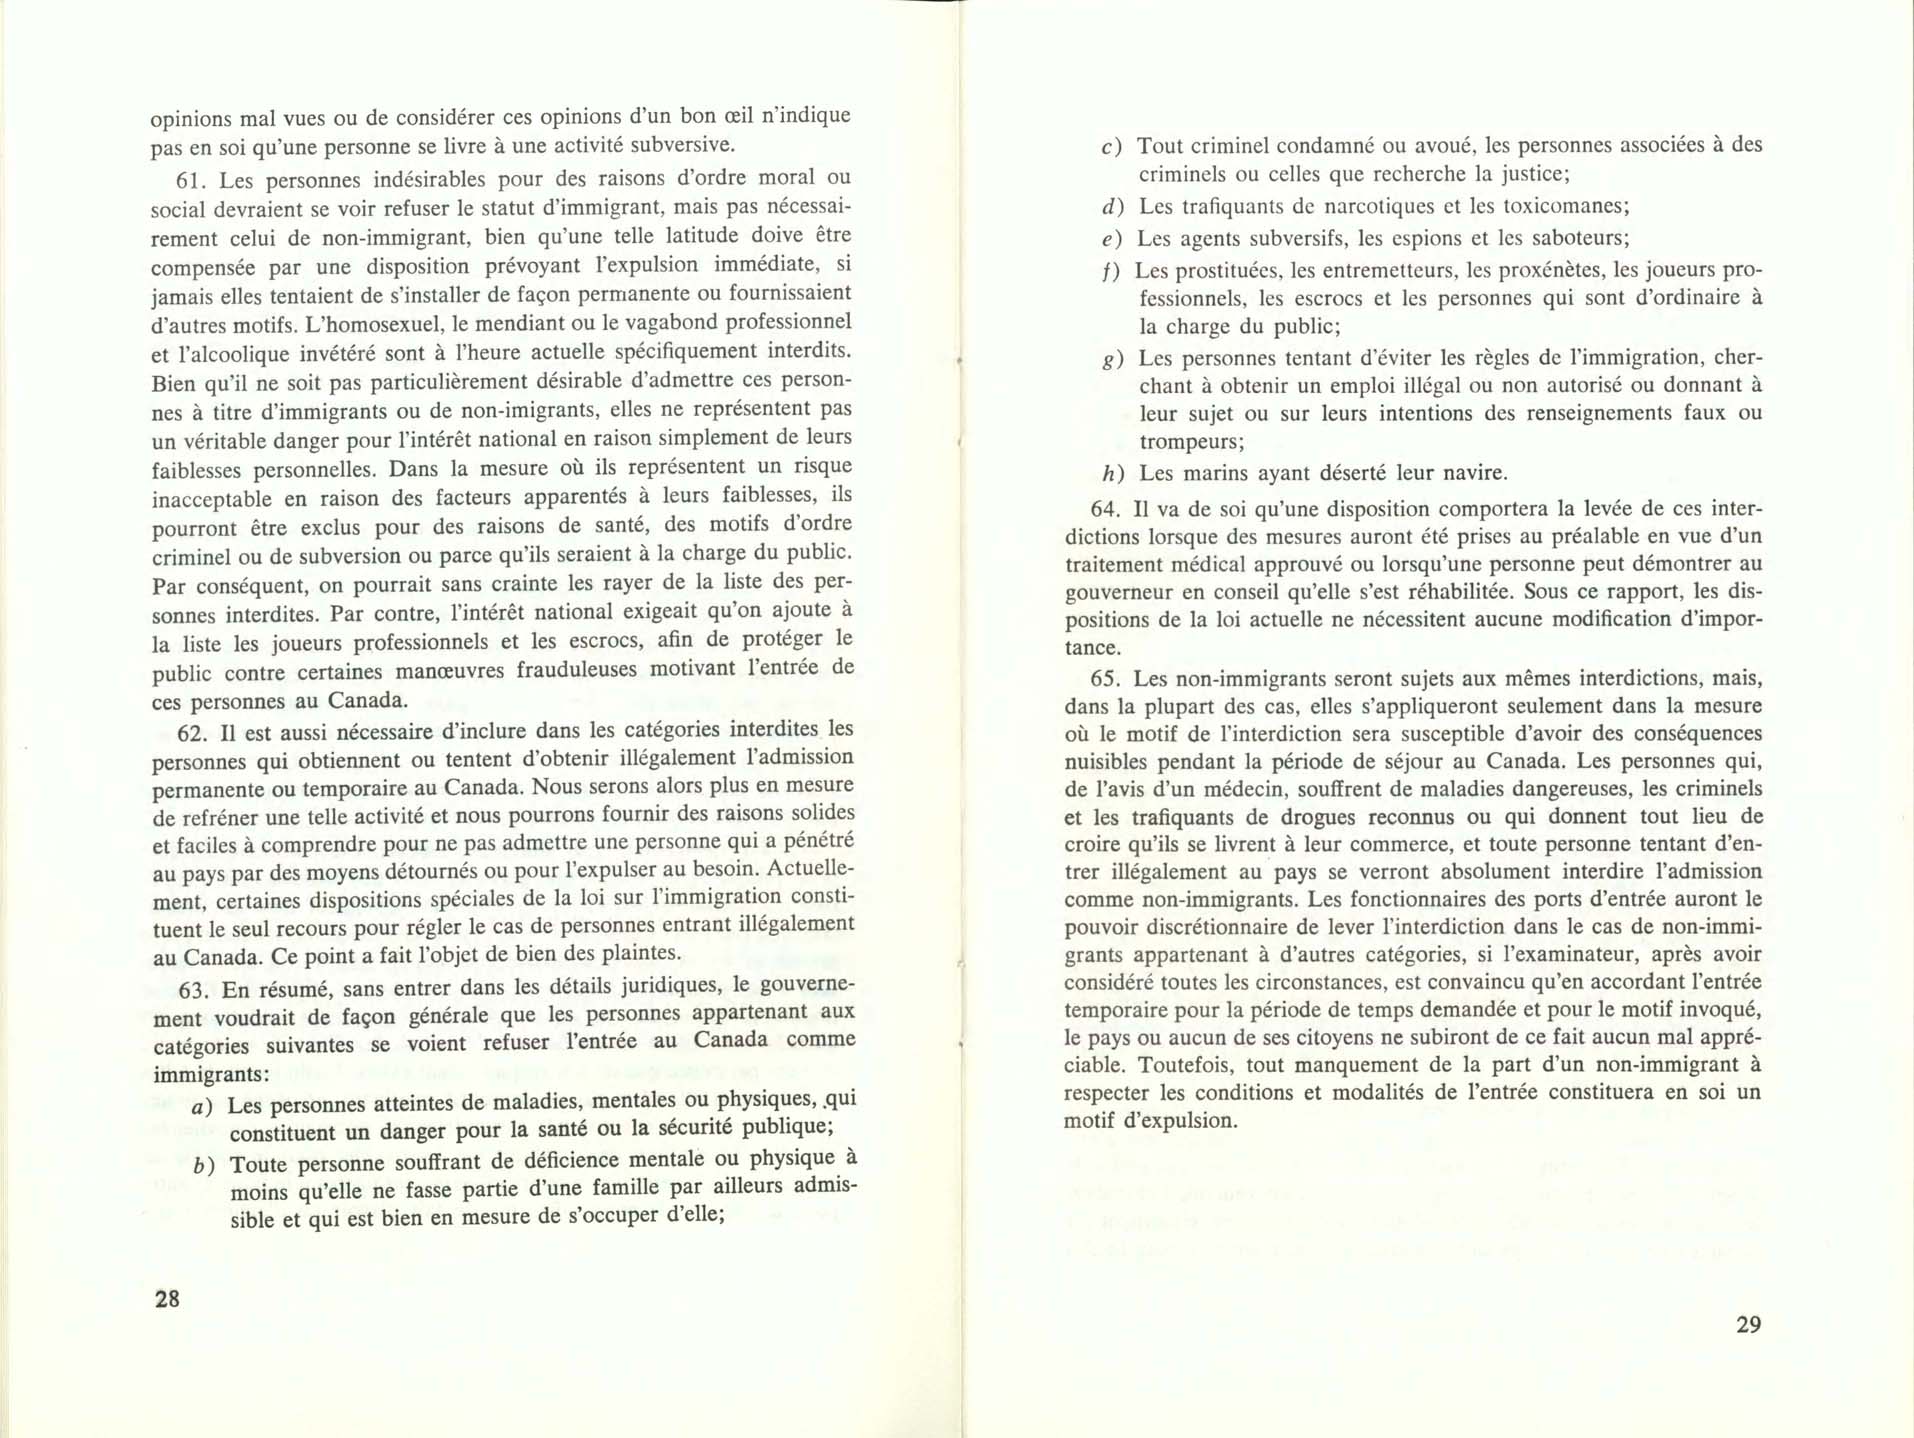 Page 28, 29 Livre Blanc sur l’immigration, 1966